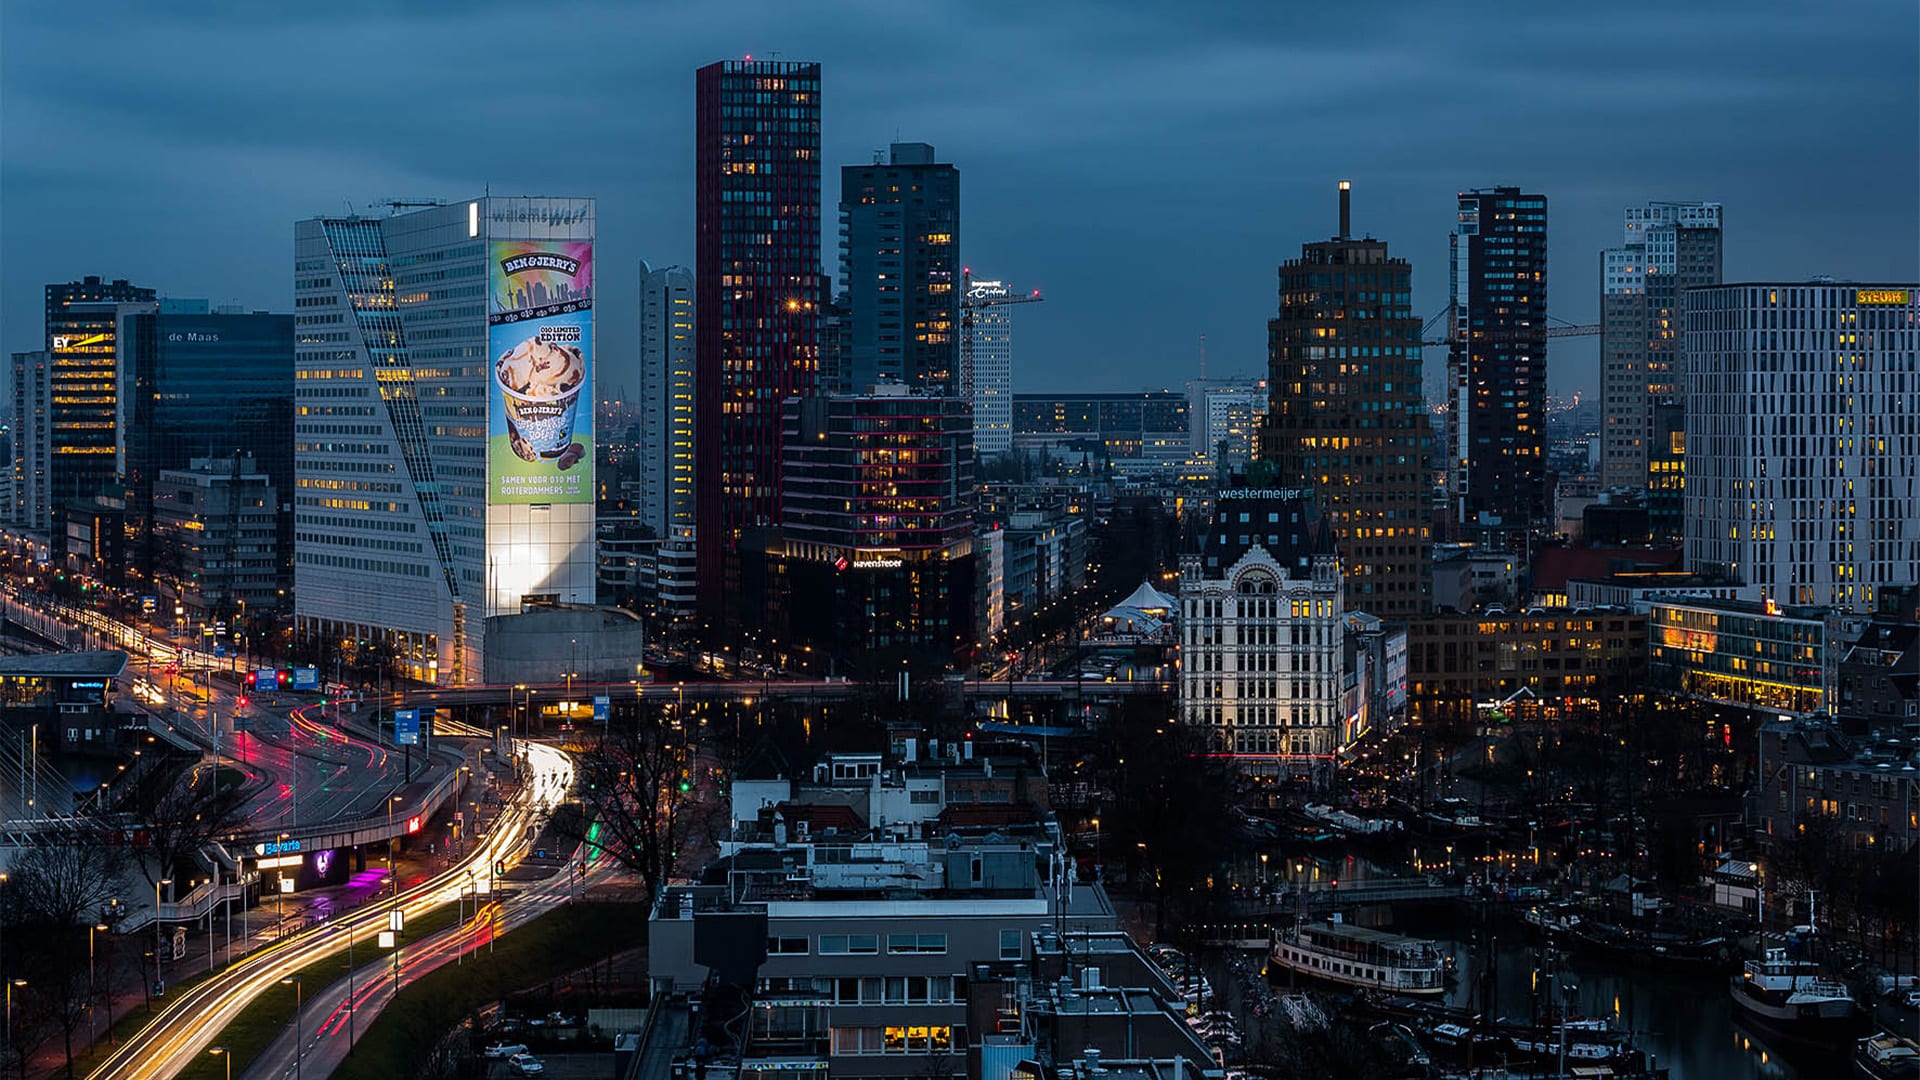 Riesenposter von Ben & Jerry in Rotterdam